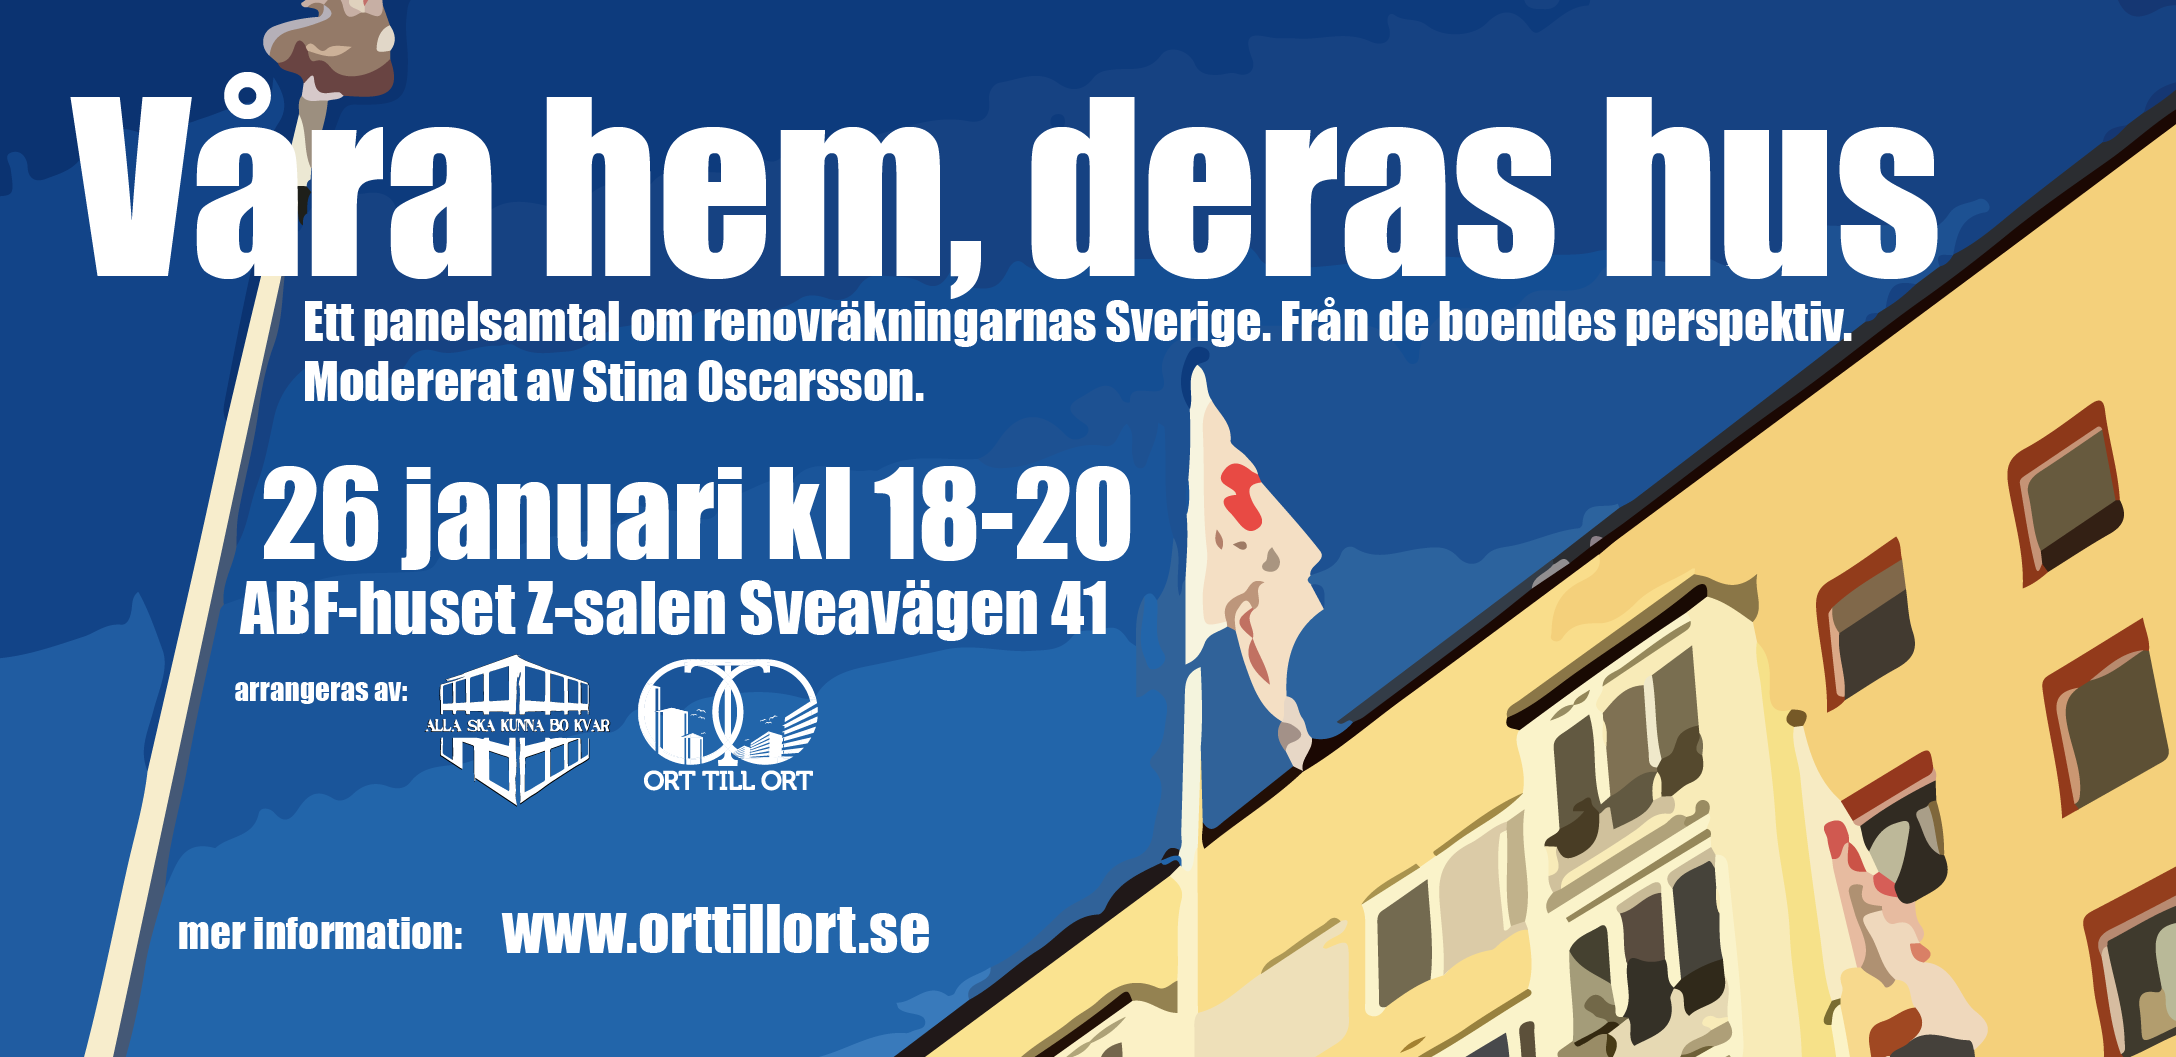 OTO tillsammans med Alla ska kunna bo kvar arrar panelsamtal med röster från områden som organiserat sig mot renovräkning. 26e Januari i Stockholm